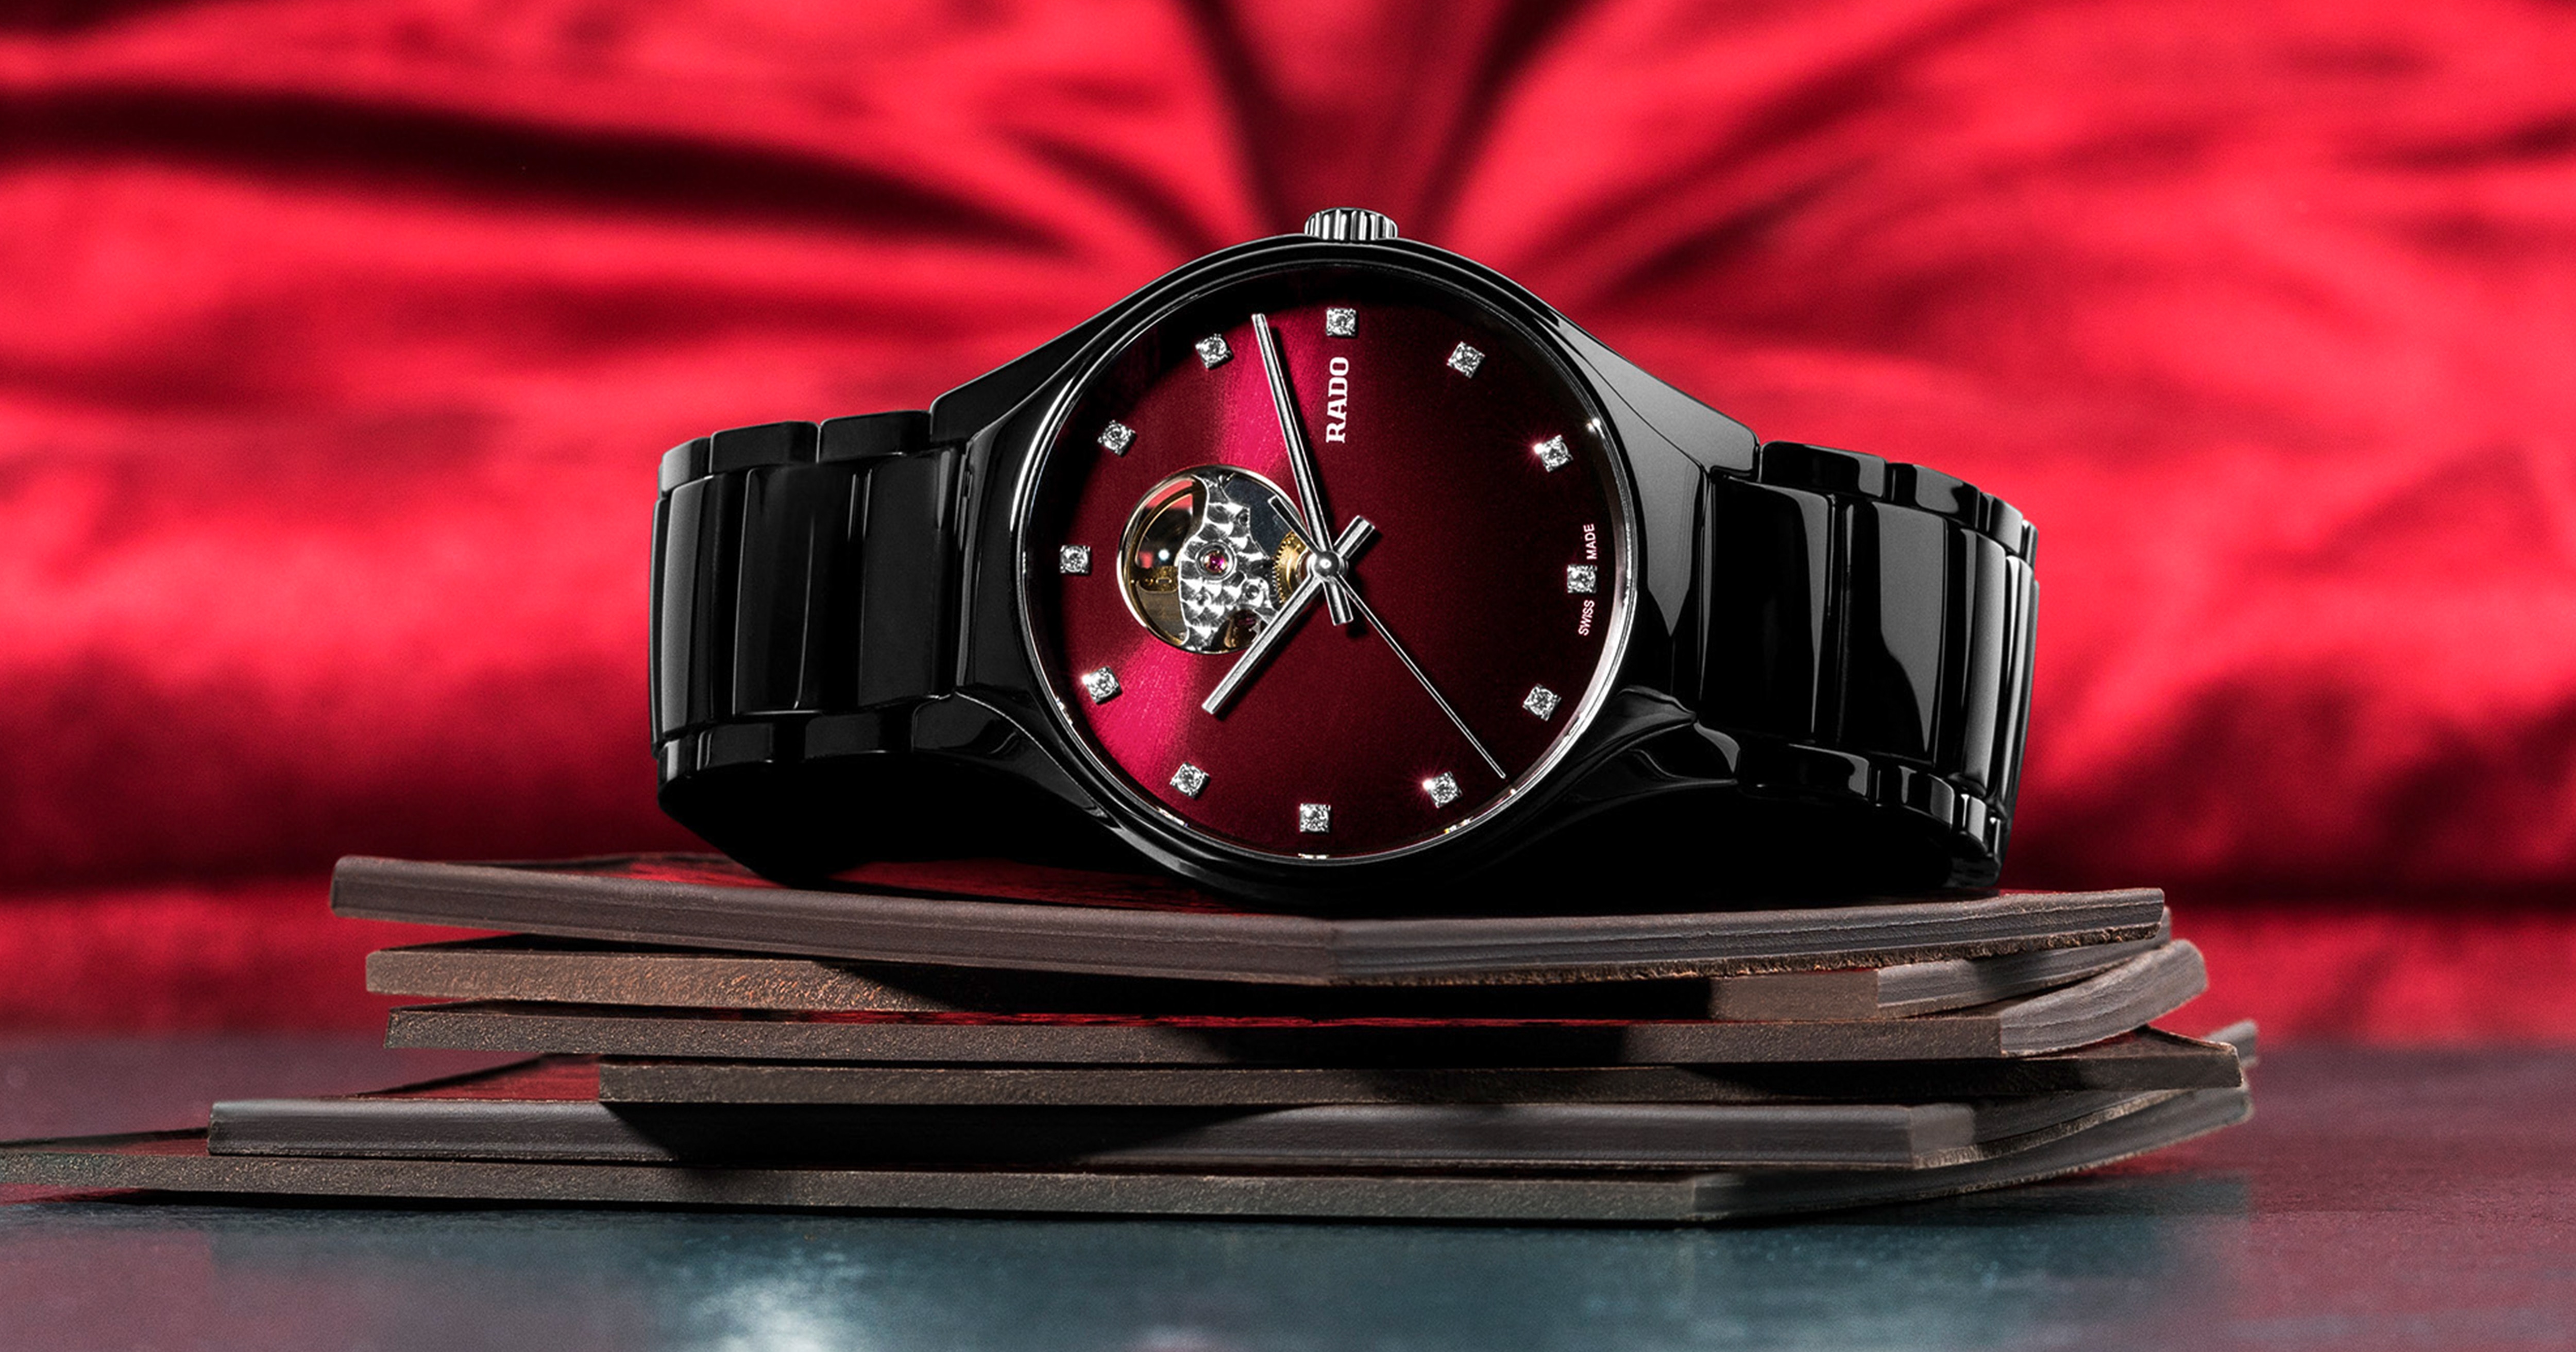 Rado瑞士雷達表True真系列自動機械腕錶